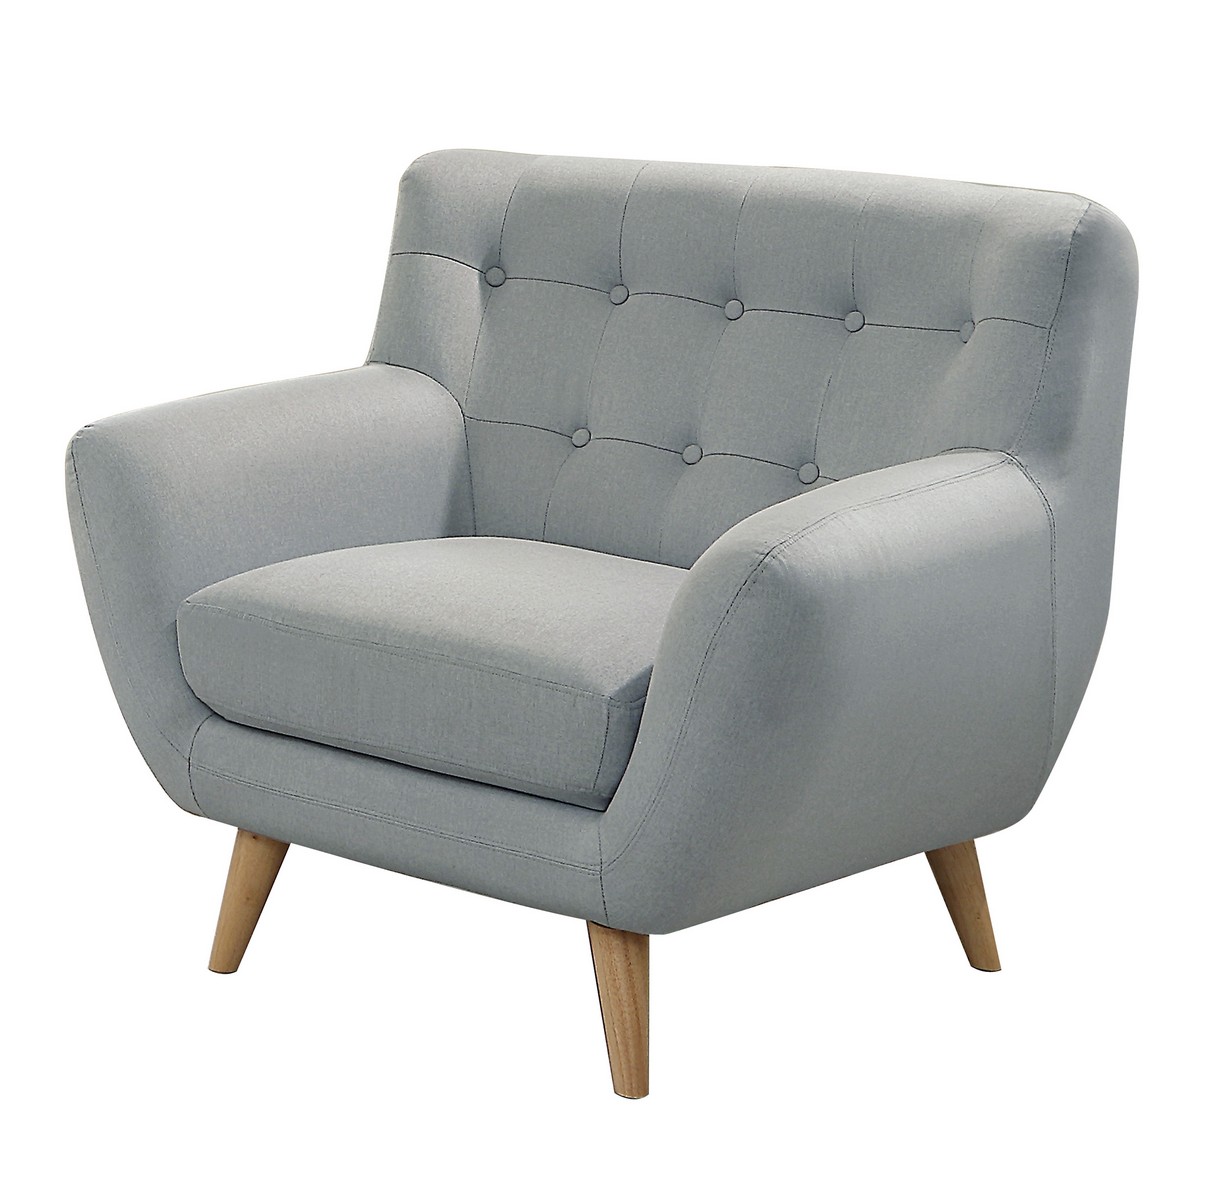 Homelegance Anke Chair - Polyester - Light Grey